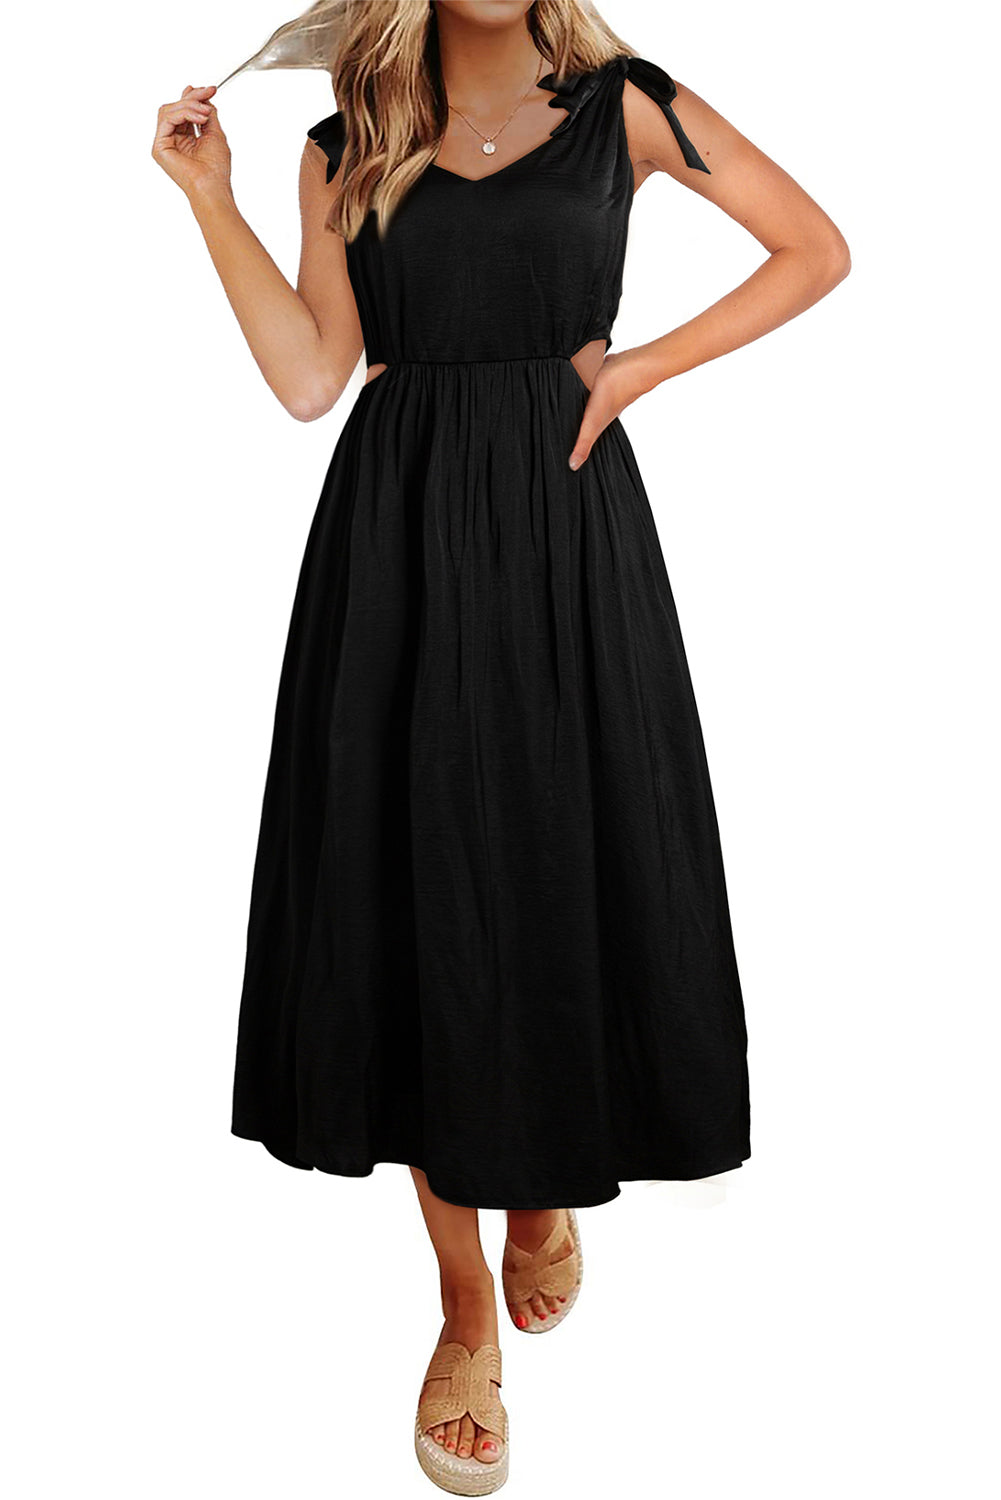 Crna duga haljina s vezanim naramenicama, izrezana do struka